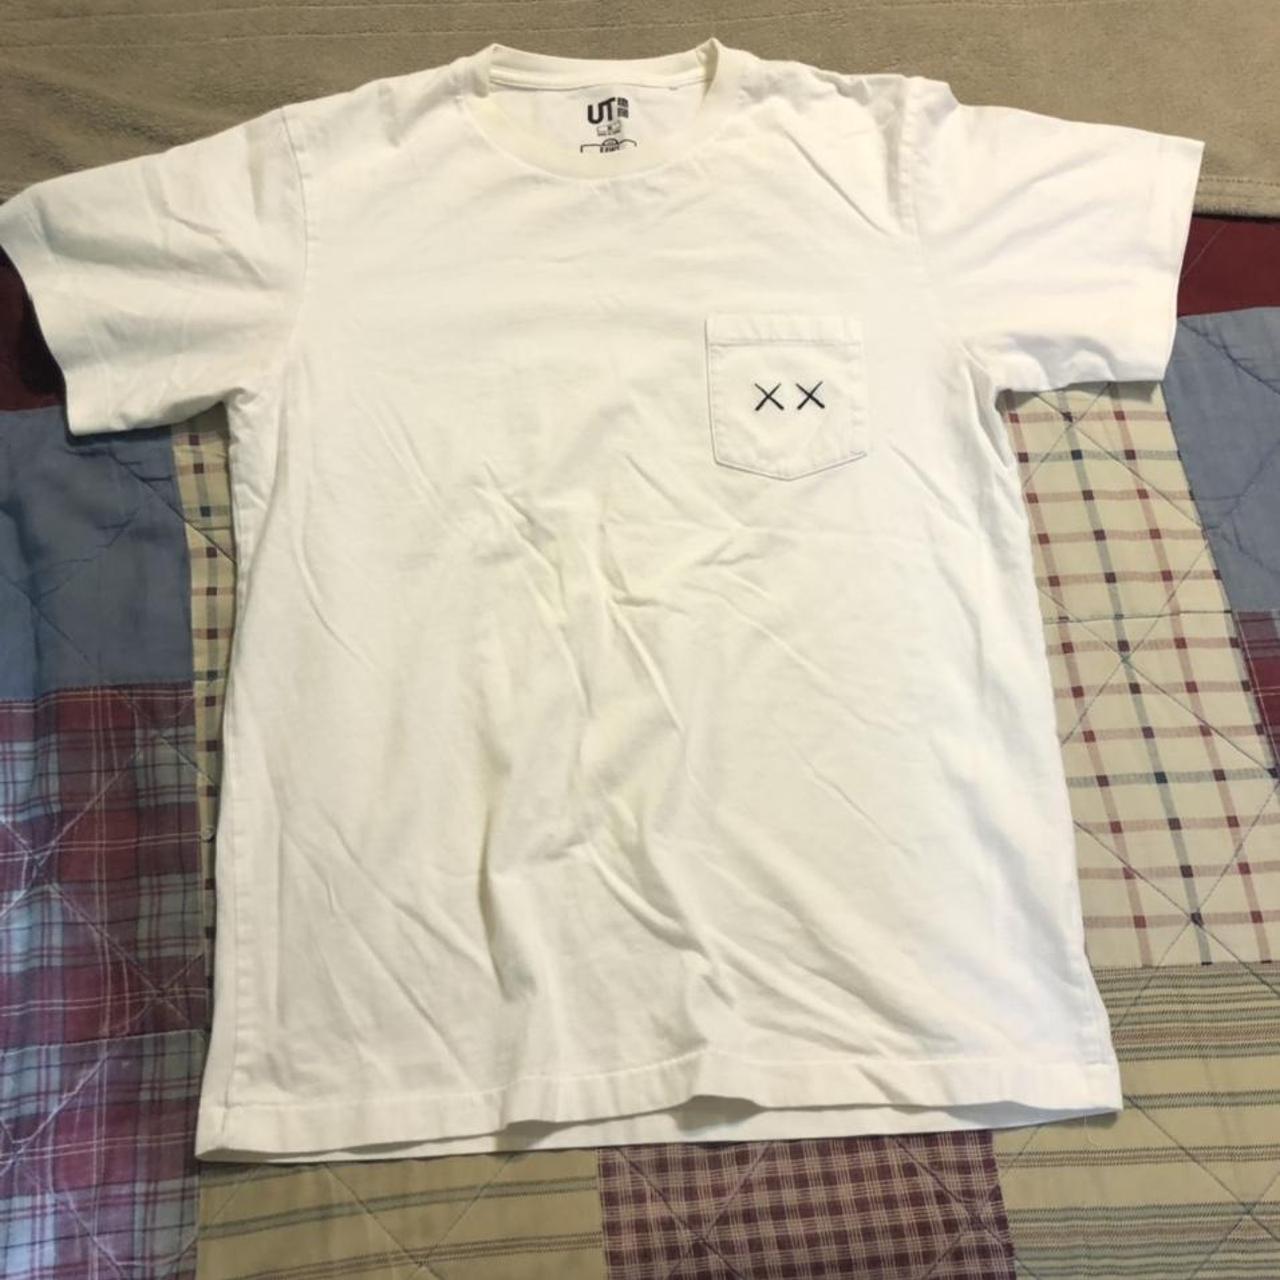 Kaws Men's White T-shirt